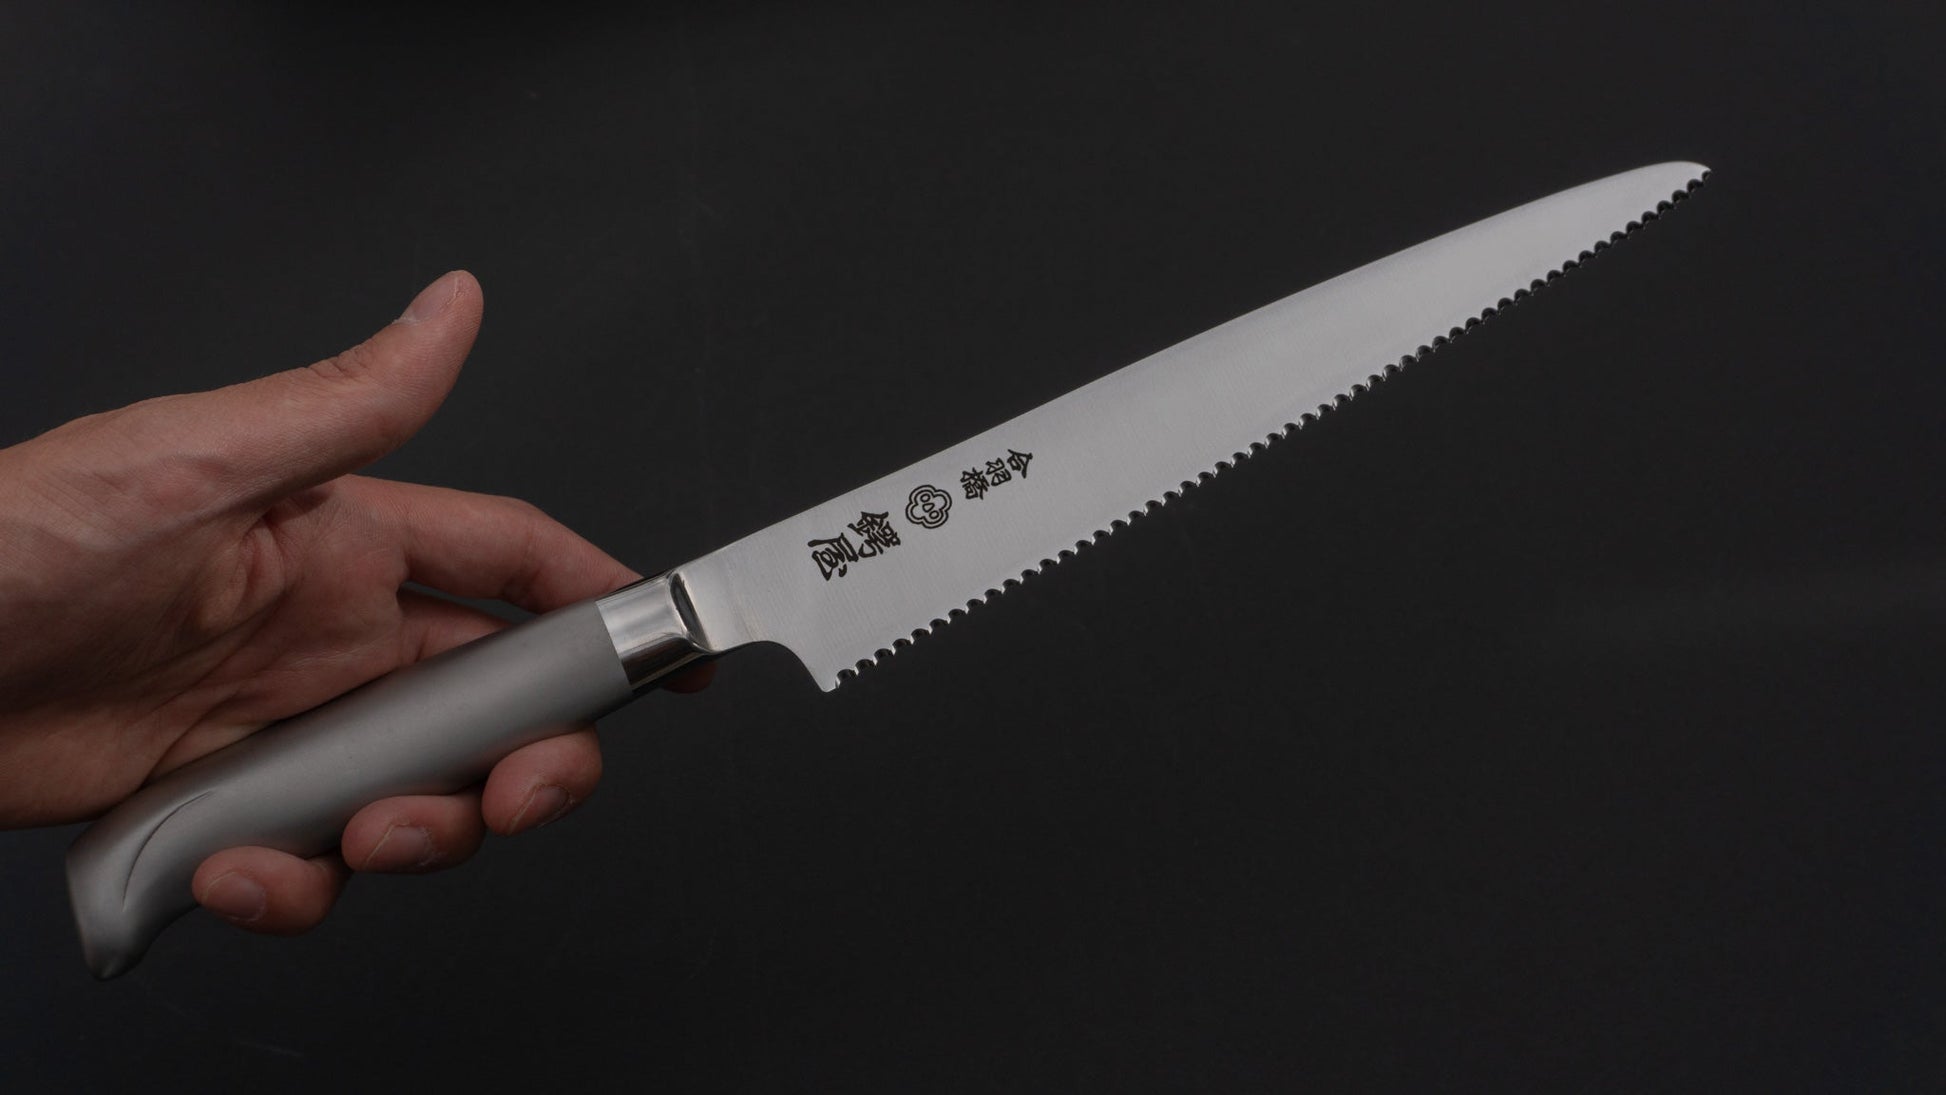 Tsubaya Bread Knife 210mm Stainless Handle - HITOHIRA